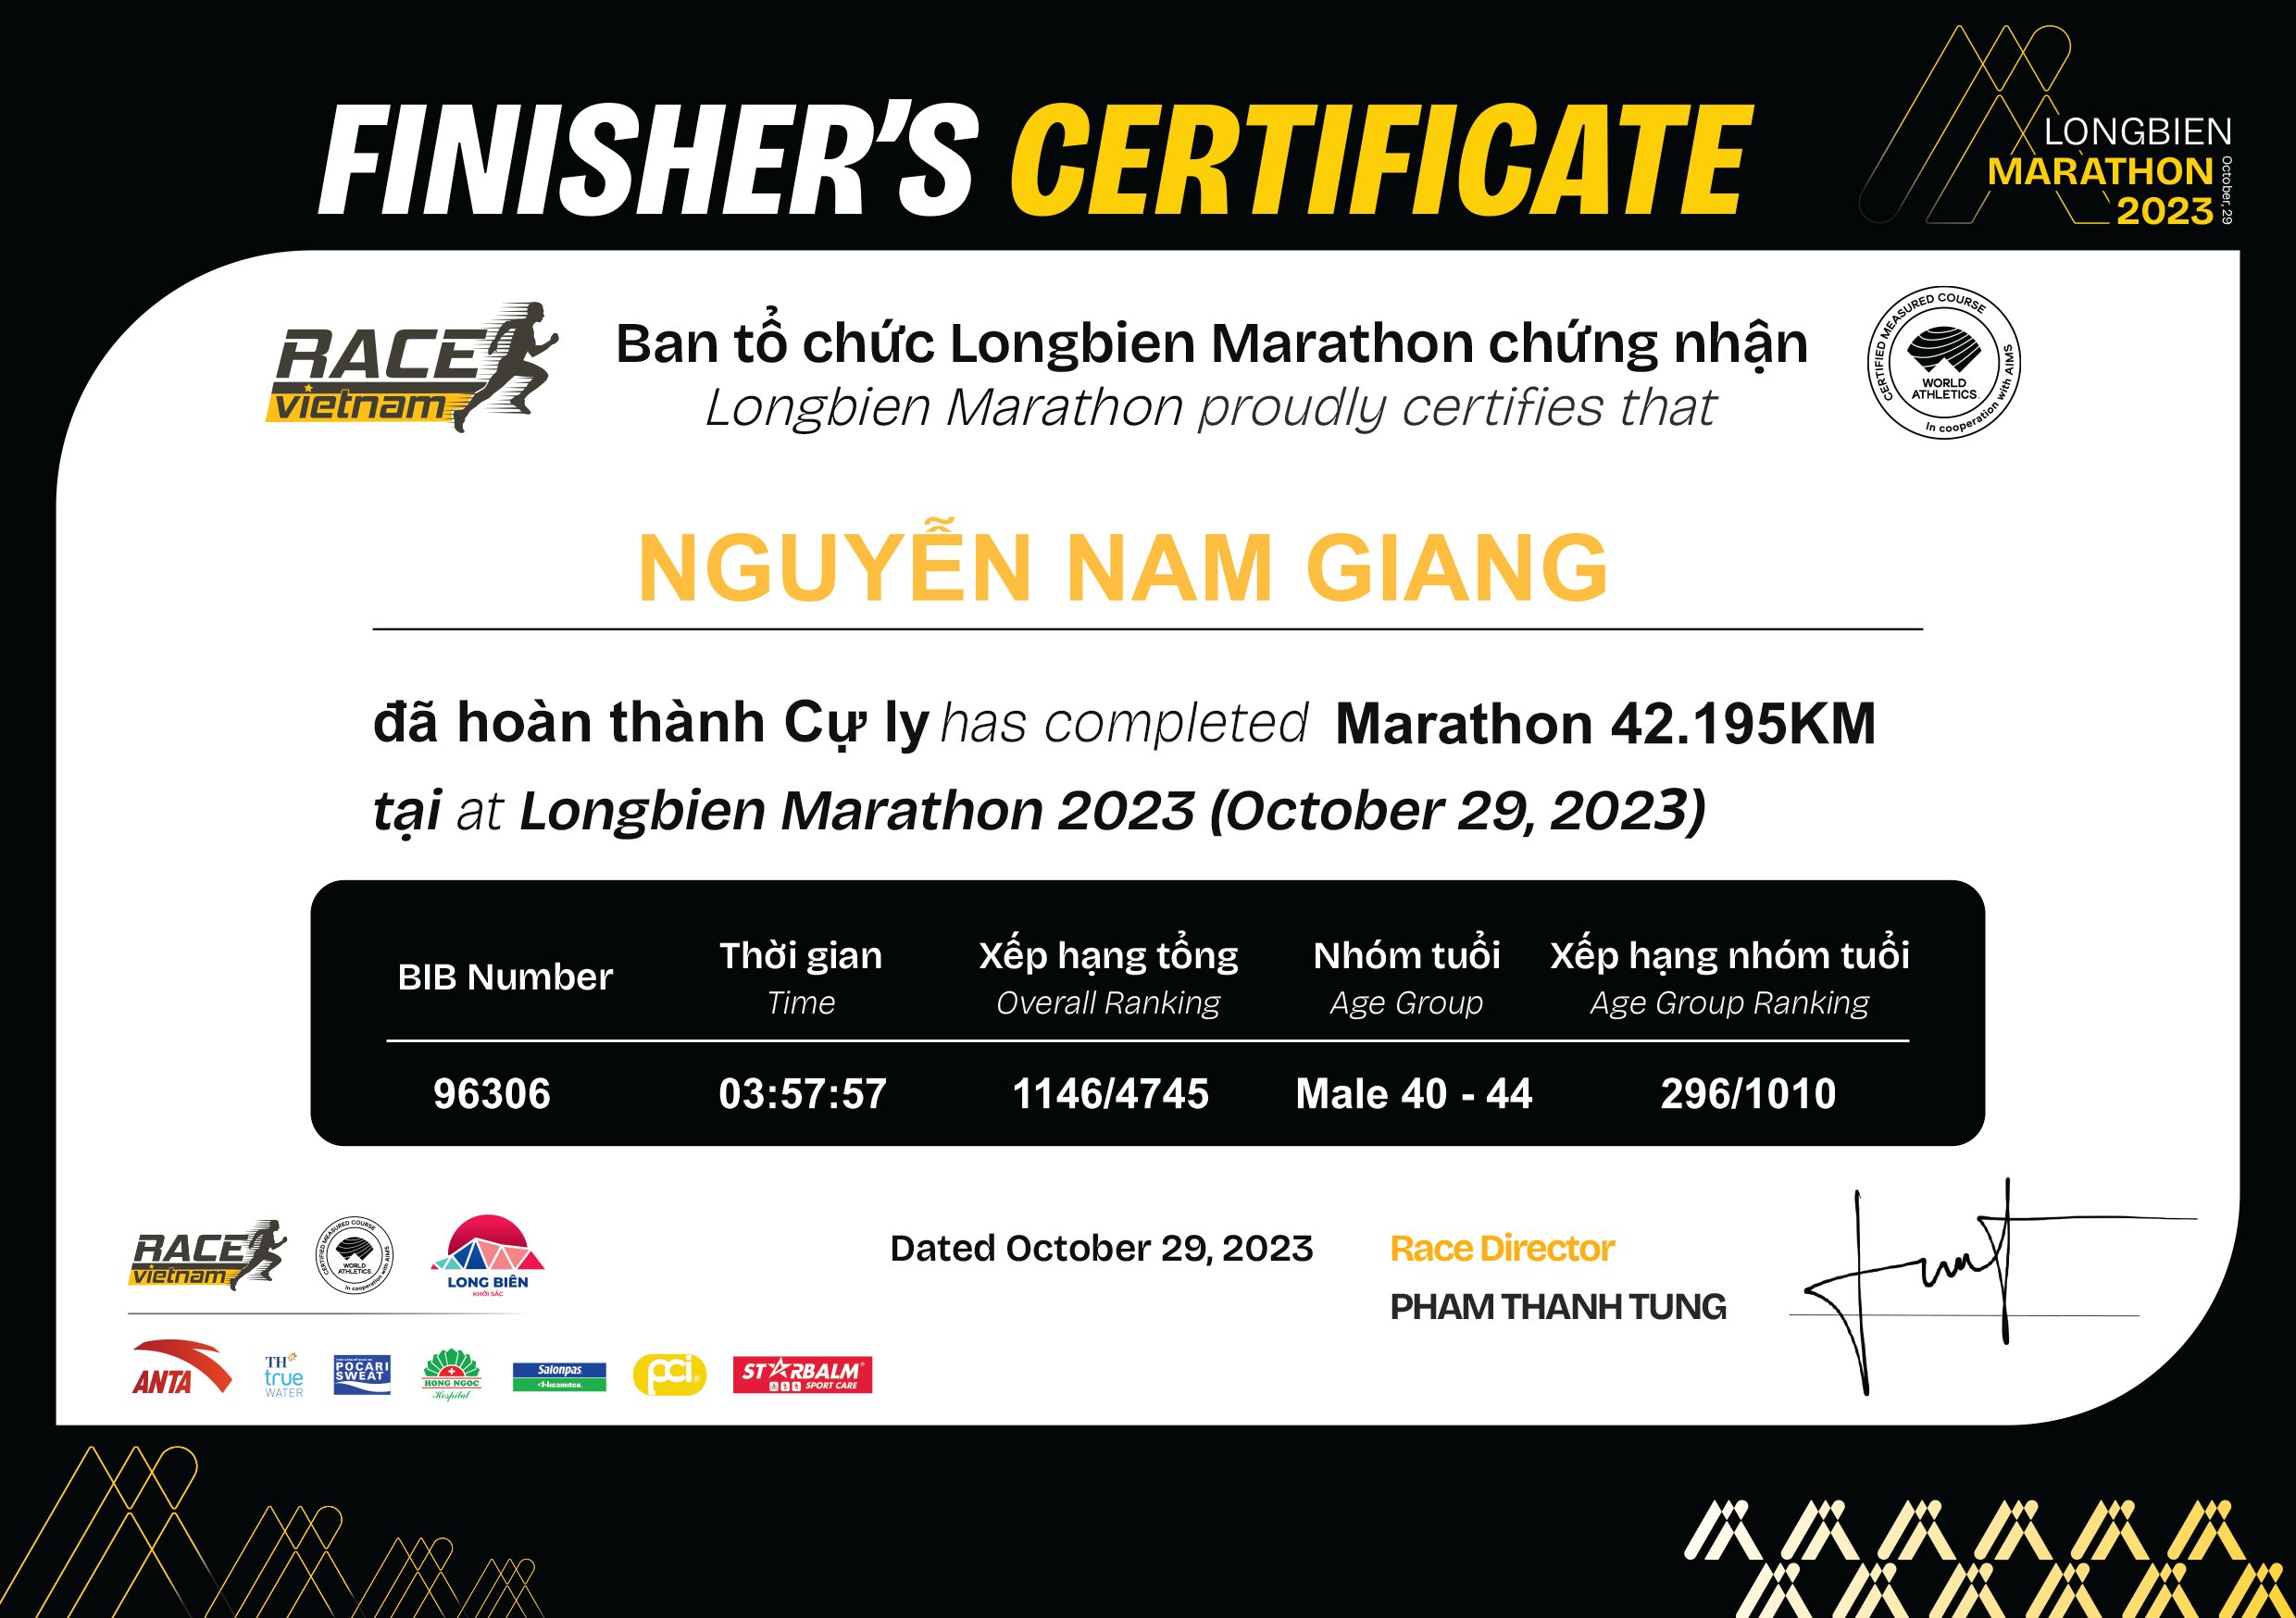 96306 - Nguyễn Nam Giang